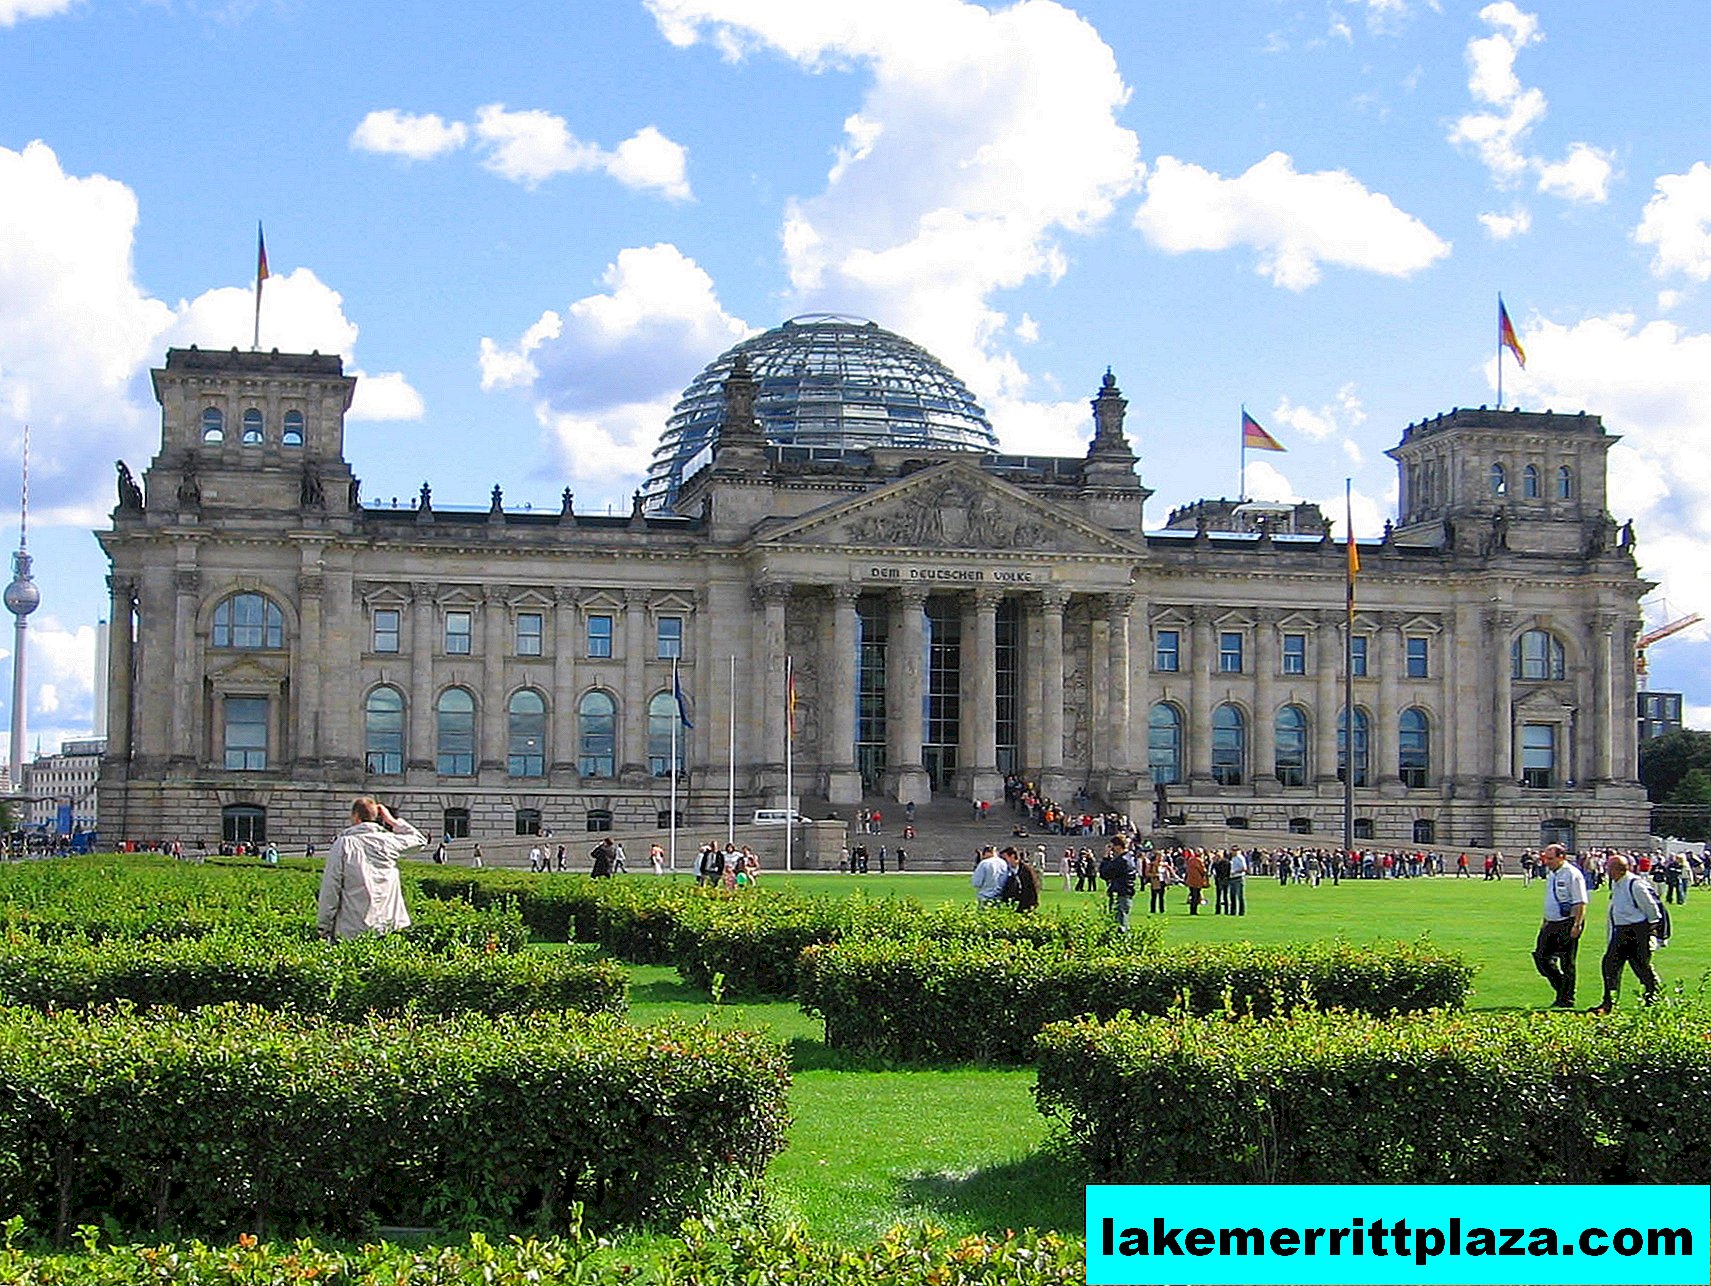 Niemcy: Reichstag